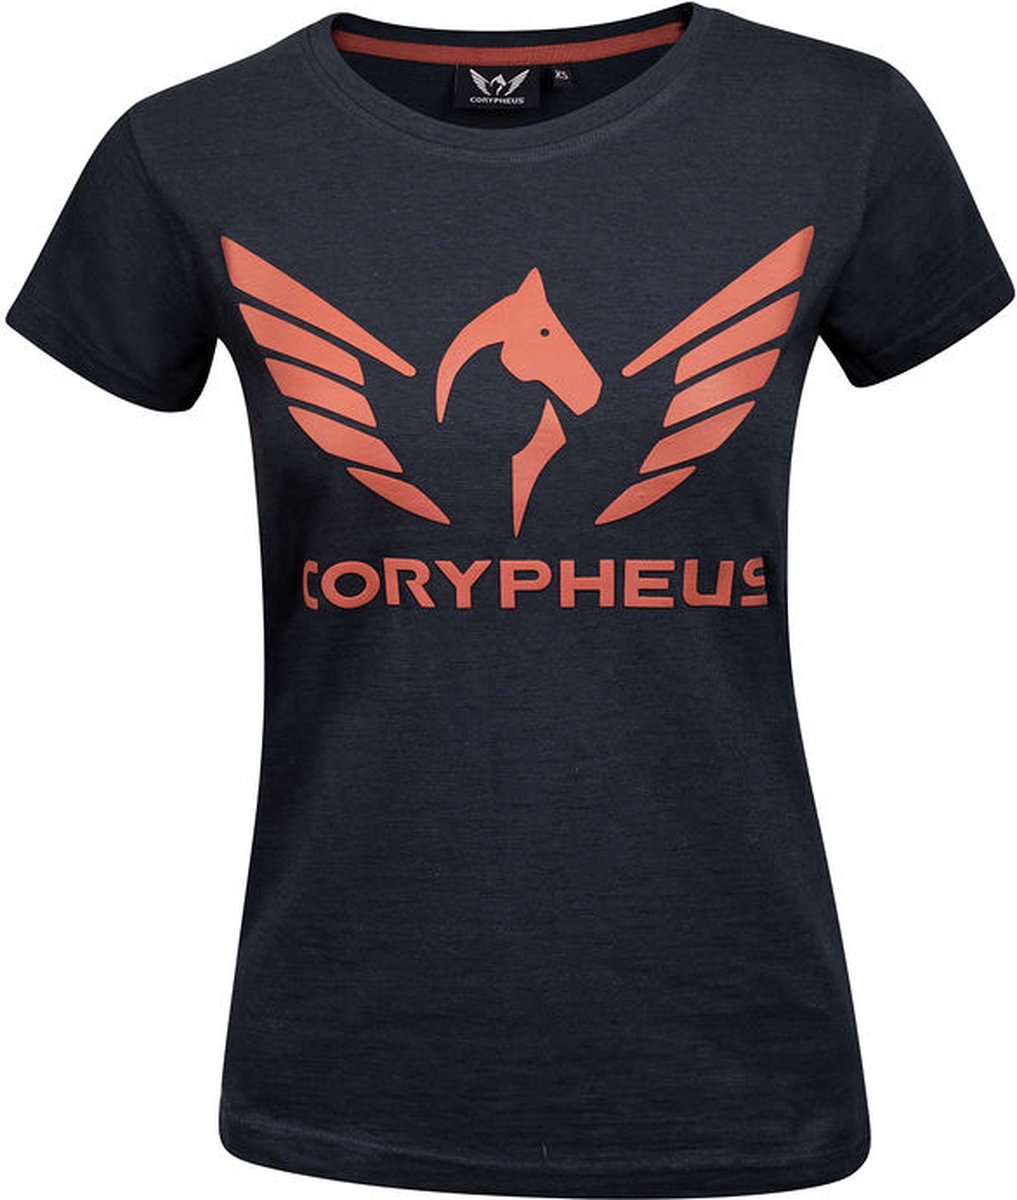 Corypheus Antracite Women's T-Shirt - Medium